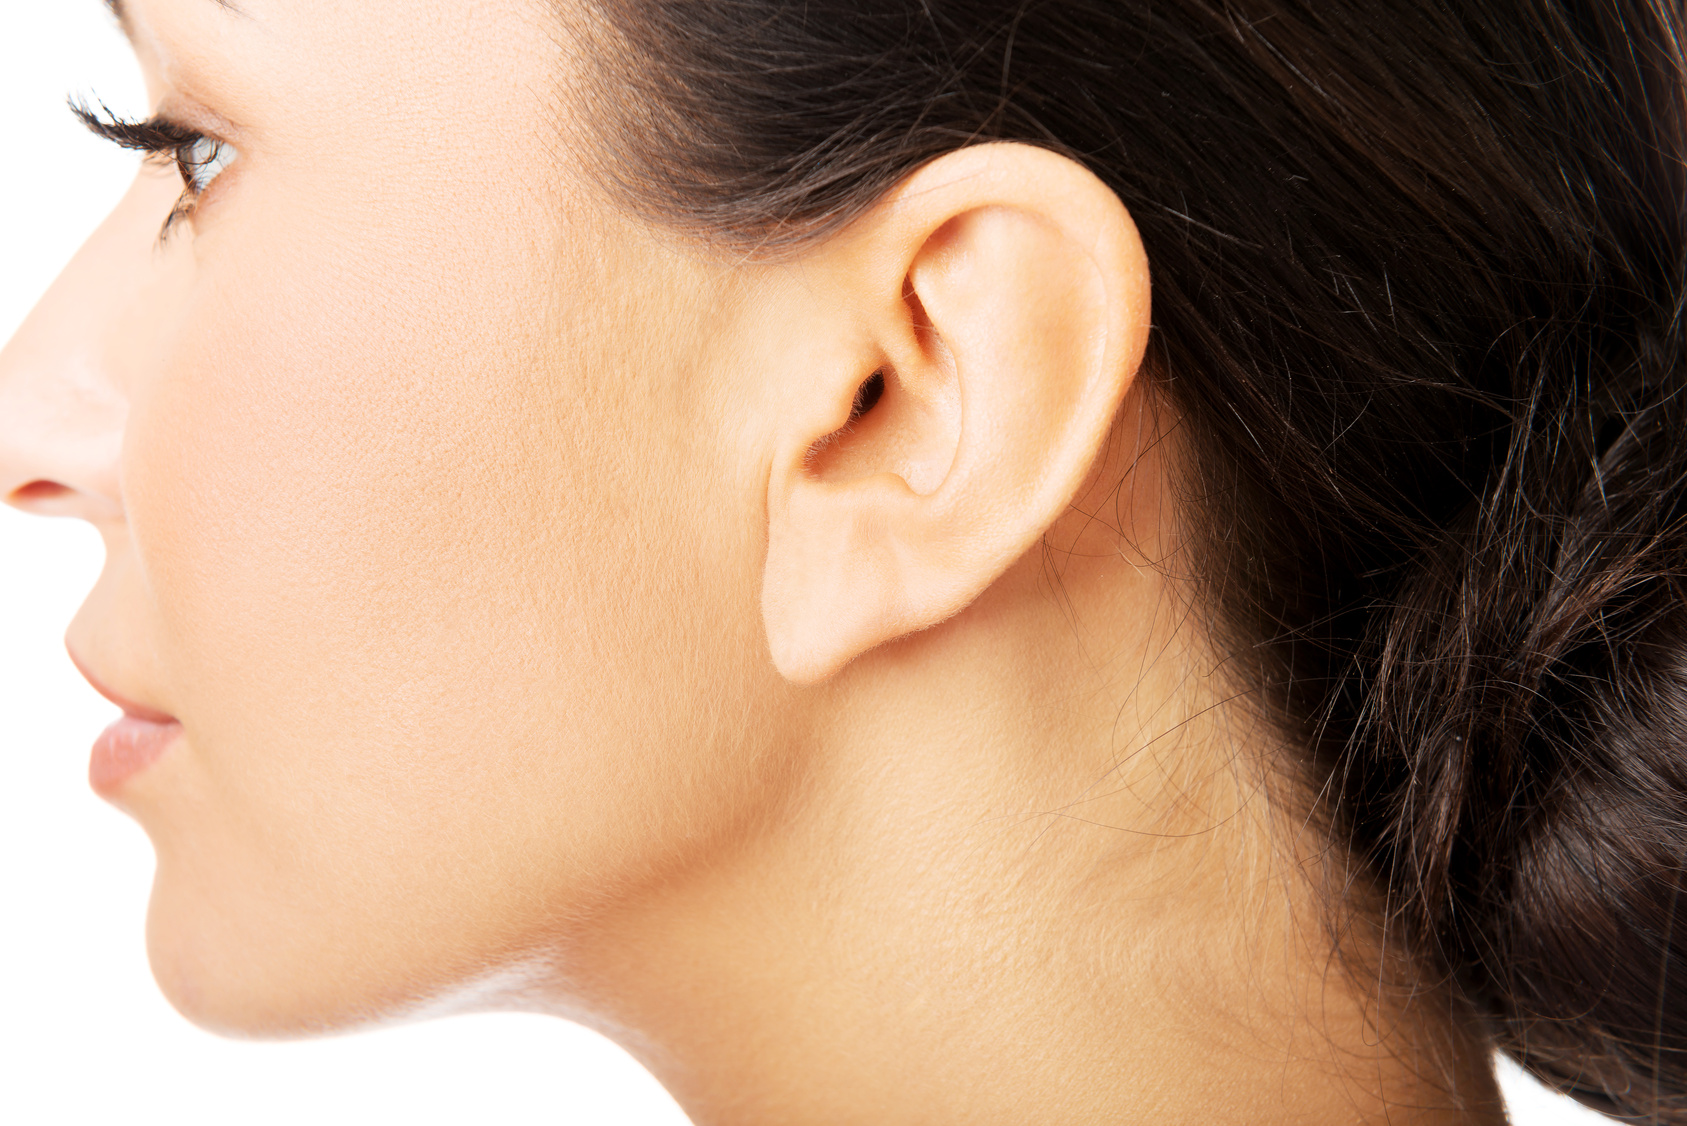 Intervento otoplastica: la chirurgia estetica dell’orecchio esterno